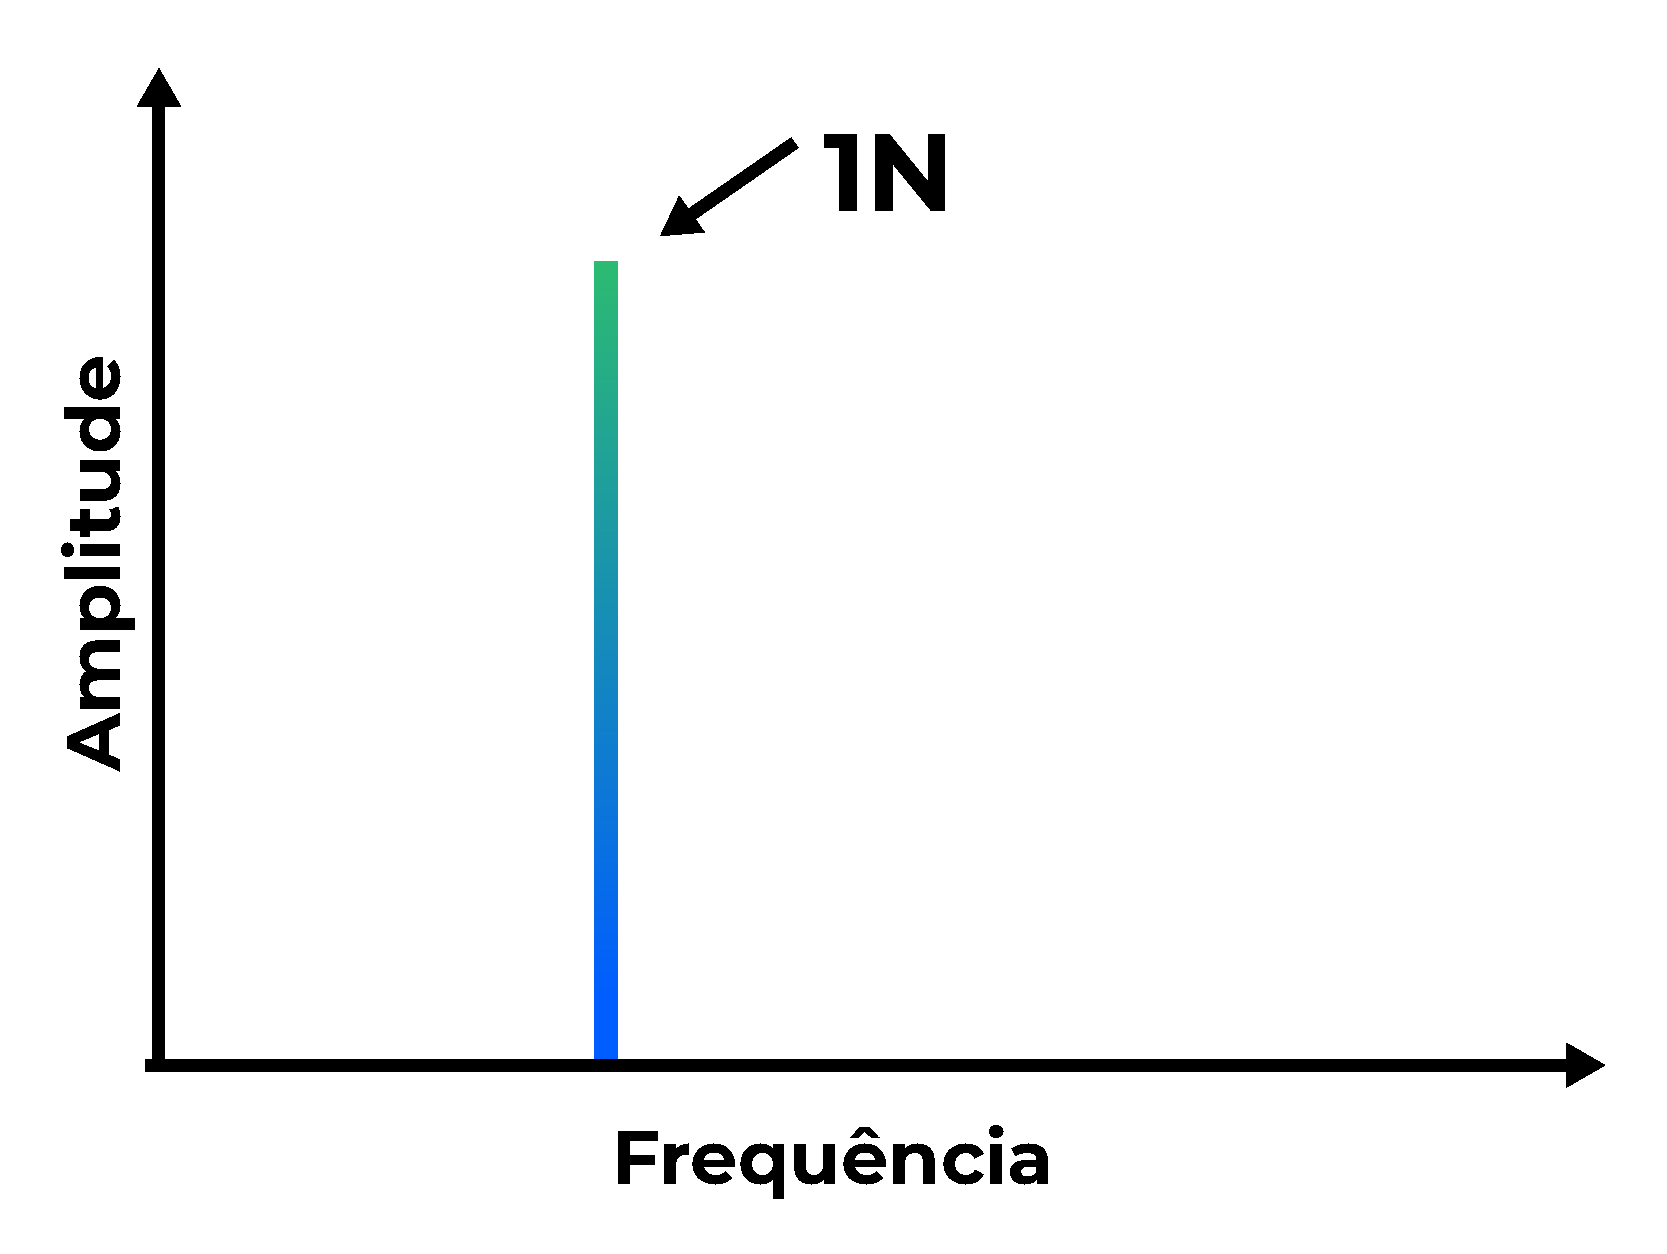 Exemplo de frequência 1N em amplitude e frequência